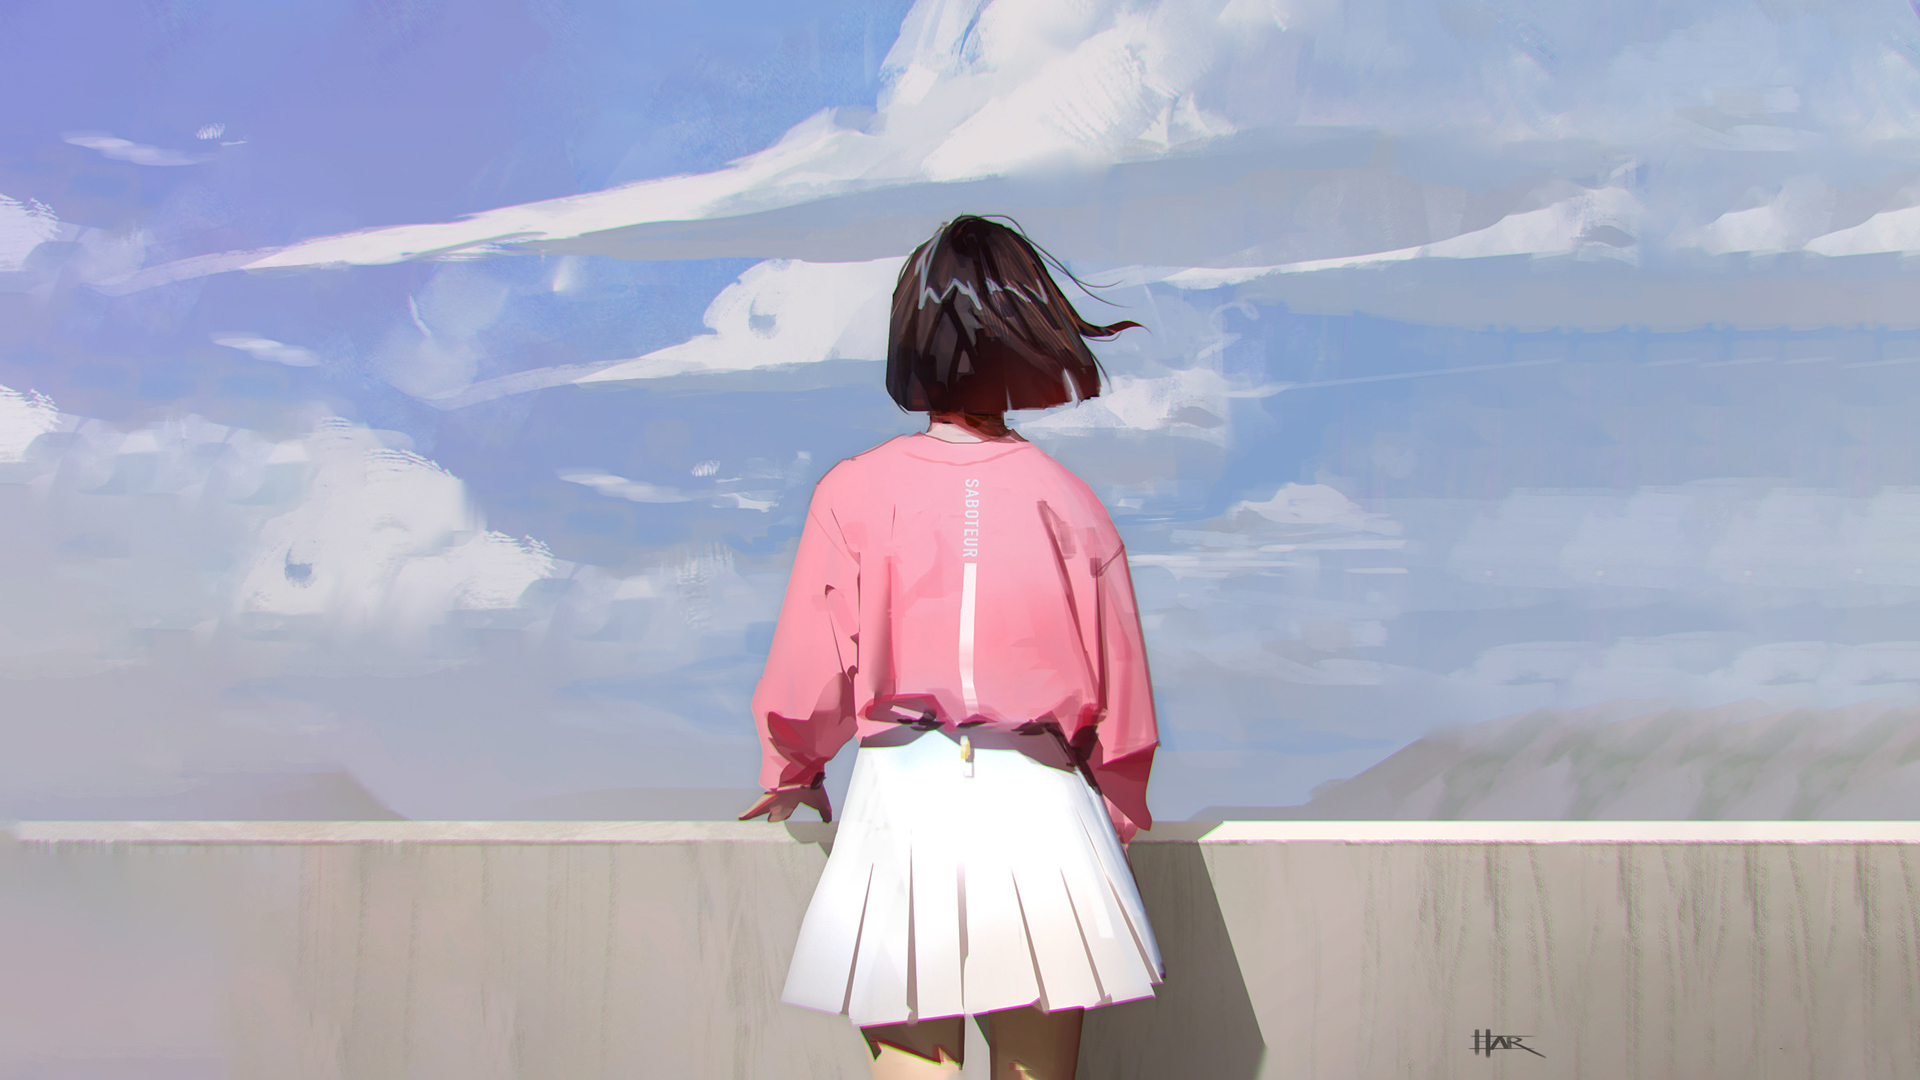 General 1920x1080 artwork anime girls anime dark hair clouds original characters digital art Hara